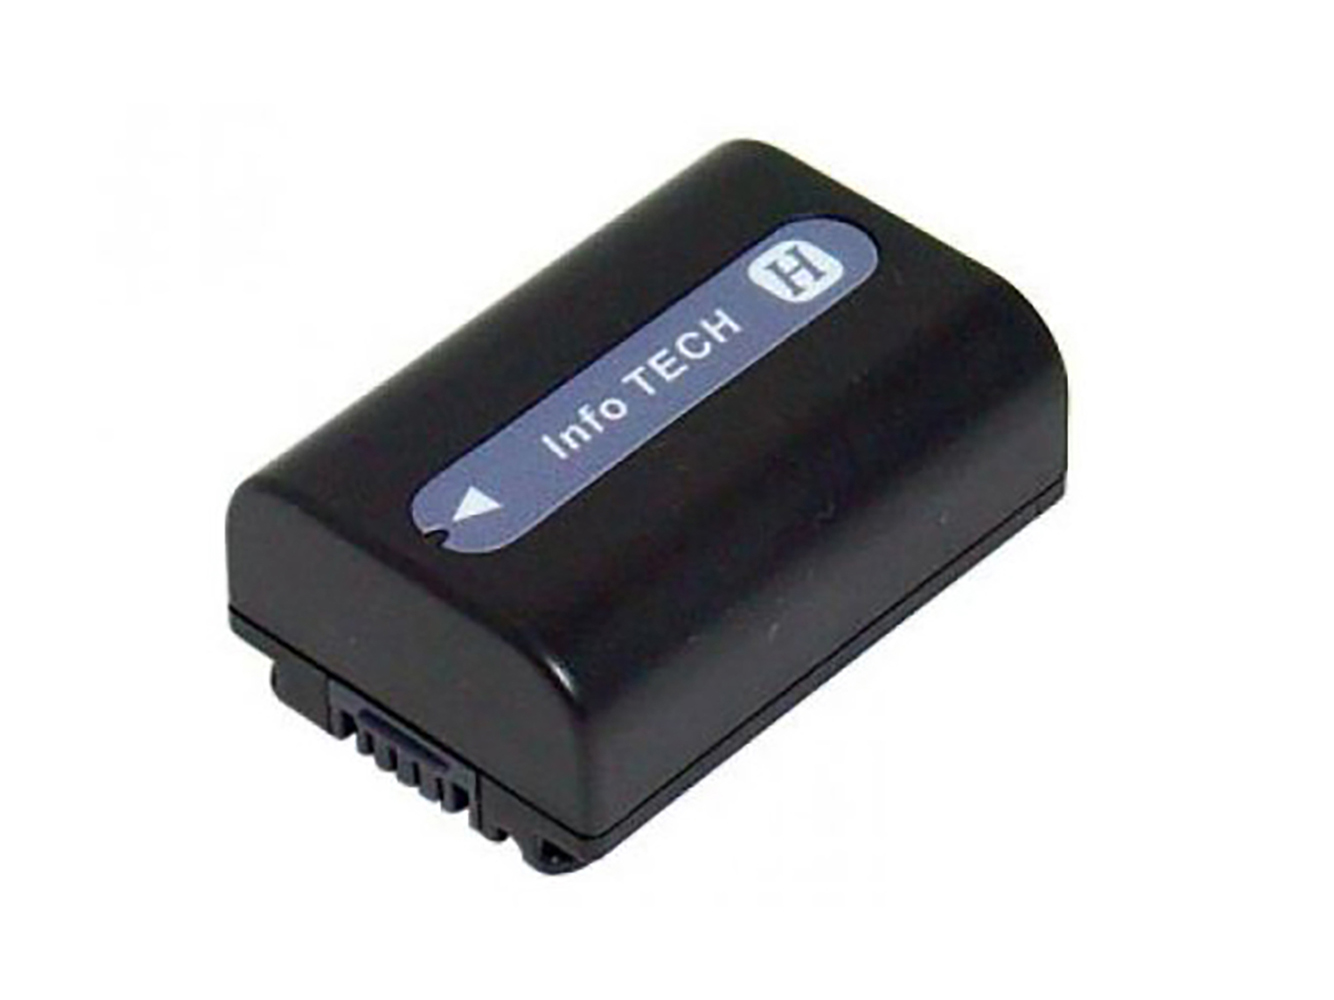 Remplacement compatible pour batterie d'appareil photo numérique SONY Cyber-shot DSC-HX1, Cyber-shot DSC-HX100V